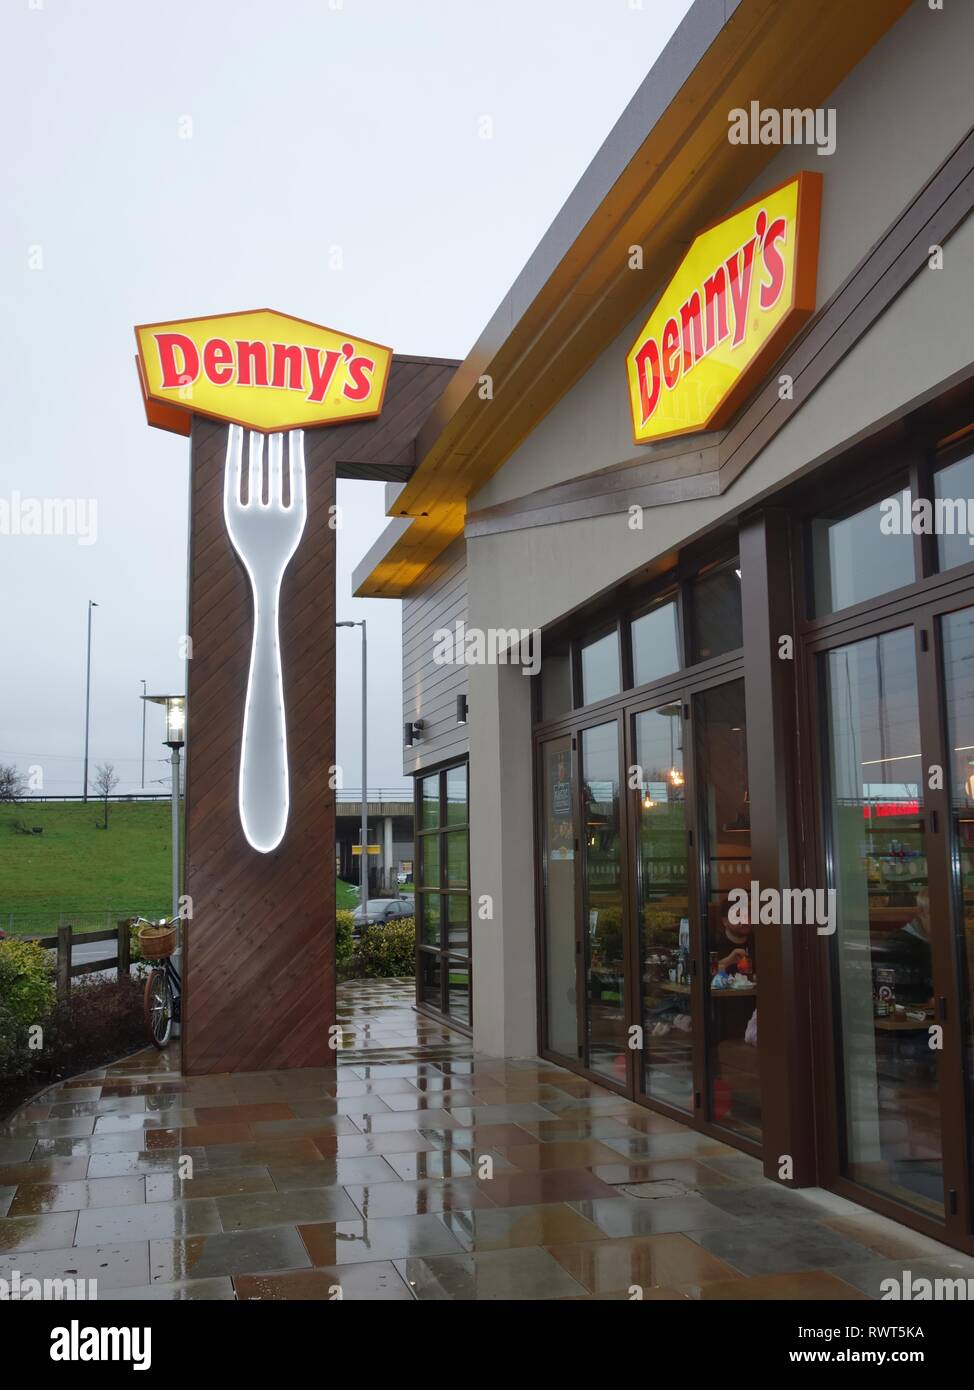 Une chaîne alimentaire américain attendu depuis longtemps, le restaurant Denny's, a ouvert ses portes en 2018 à Hillington, Glasgow Ecosse, Royaume-Uni Banque D'Images